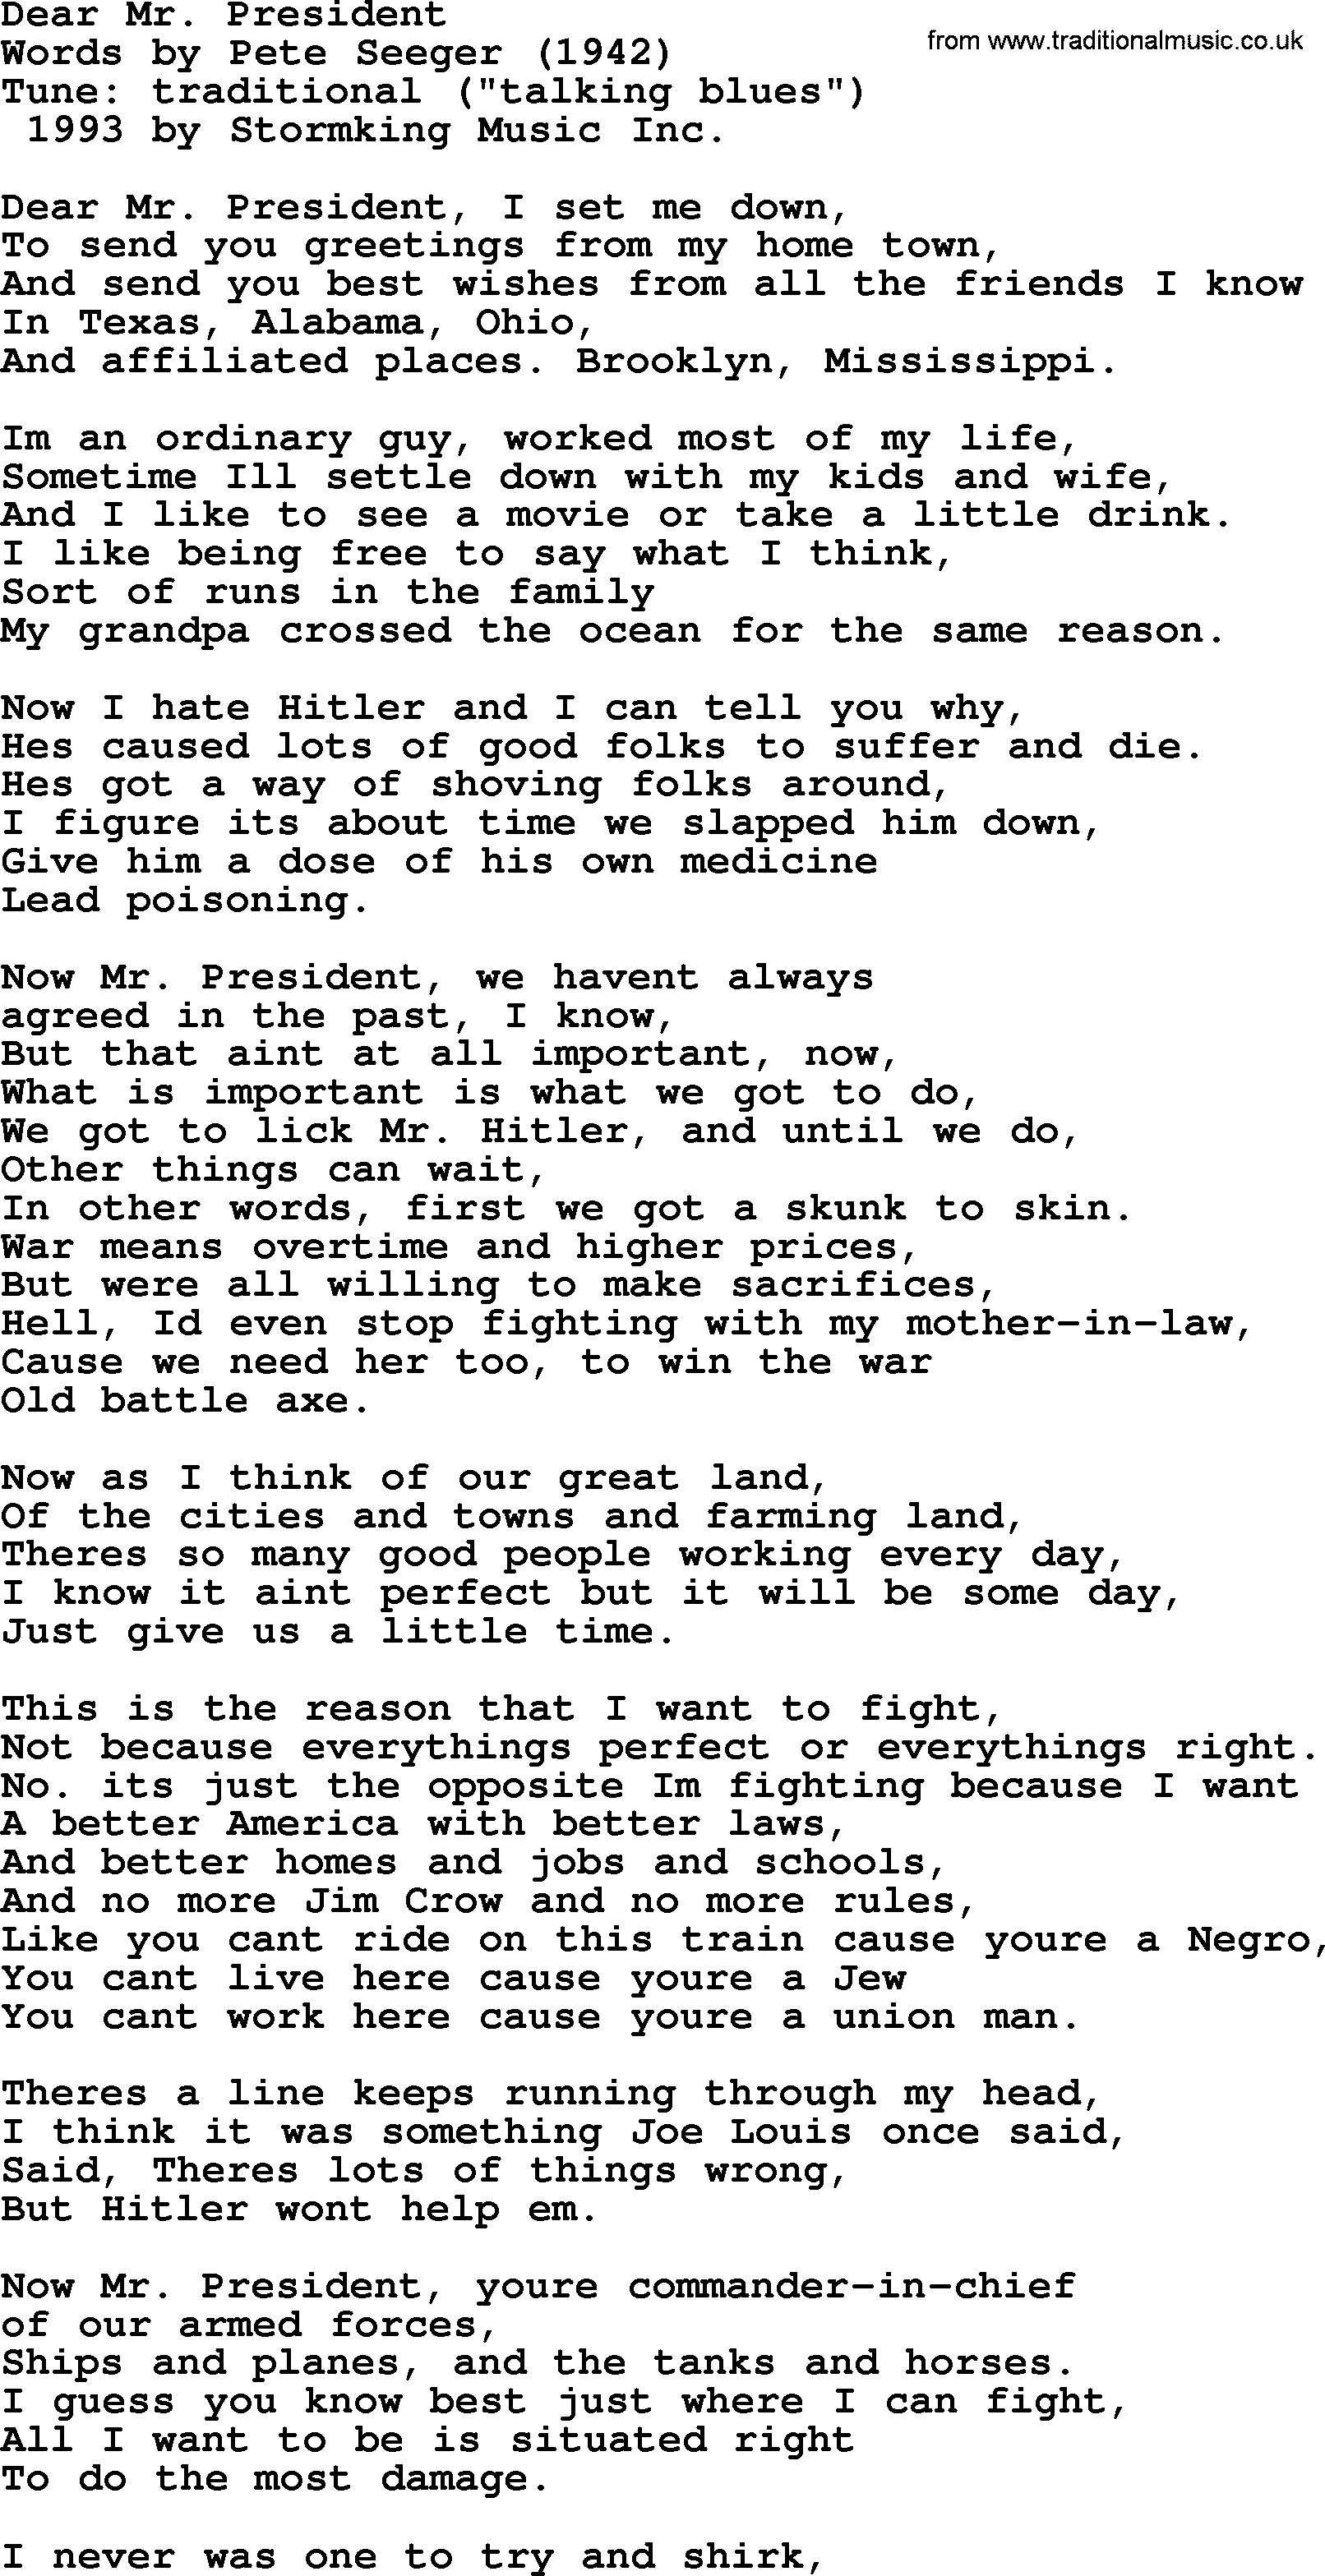 Pete Seeger song Dear Mr. President-Pete-Seeger.txt lyrics